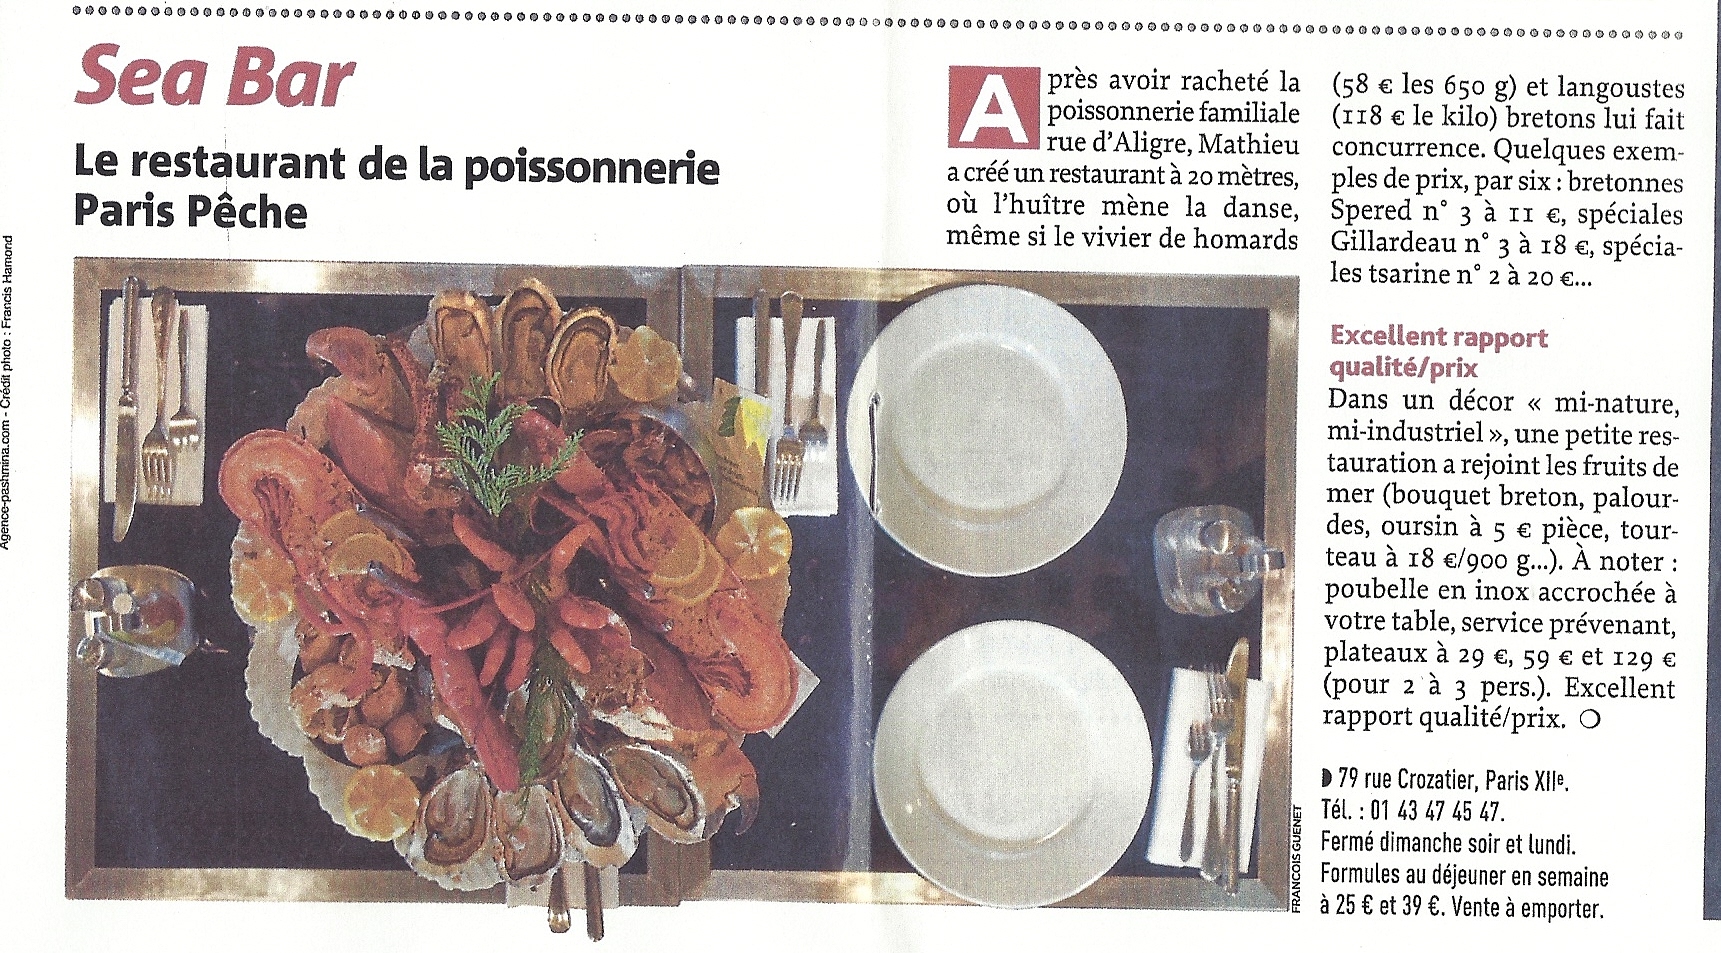 Le Figaro - Semaine du 15 décembre 2013